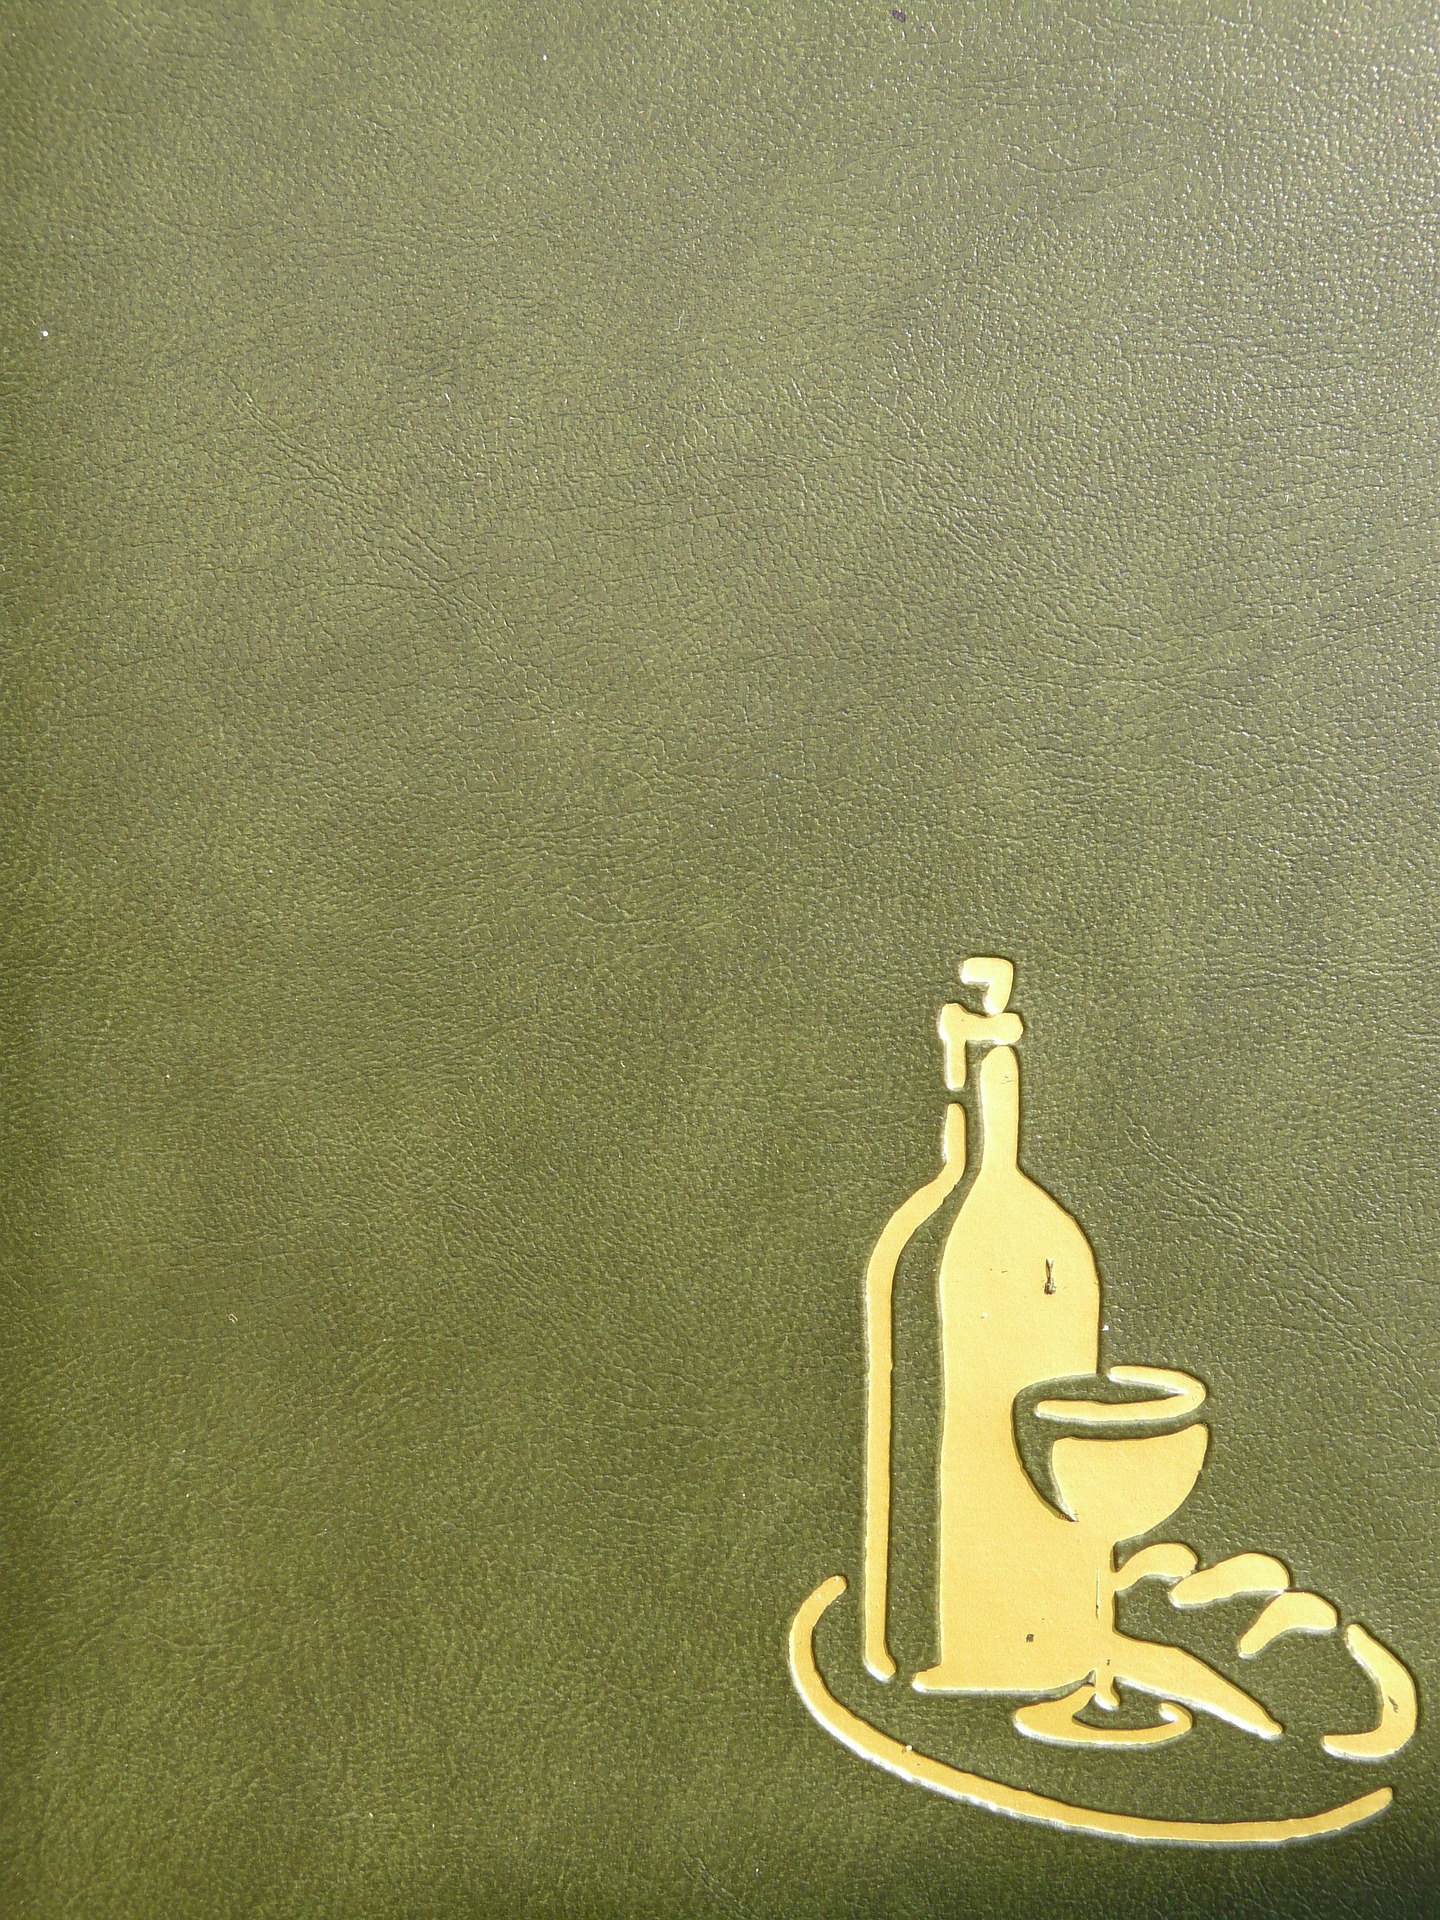 carte des vins